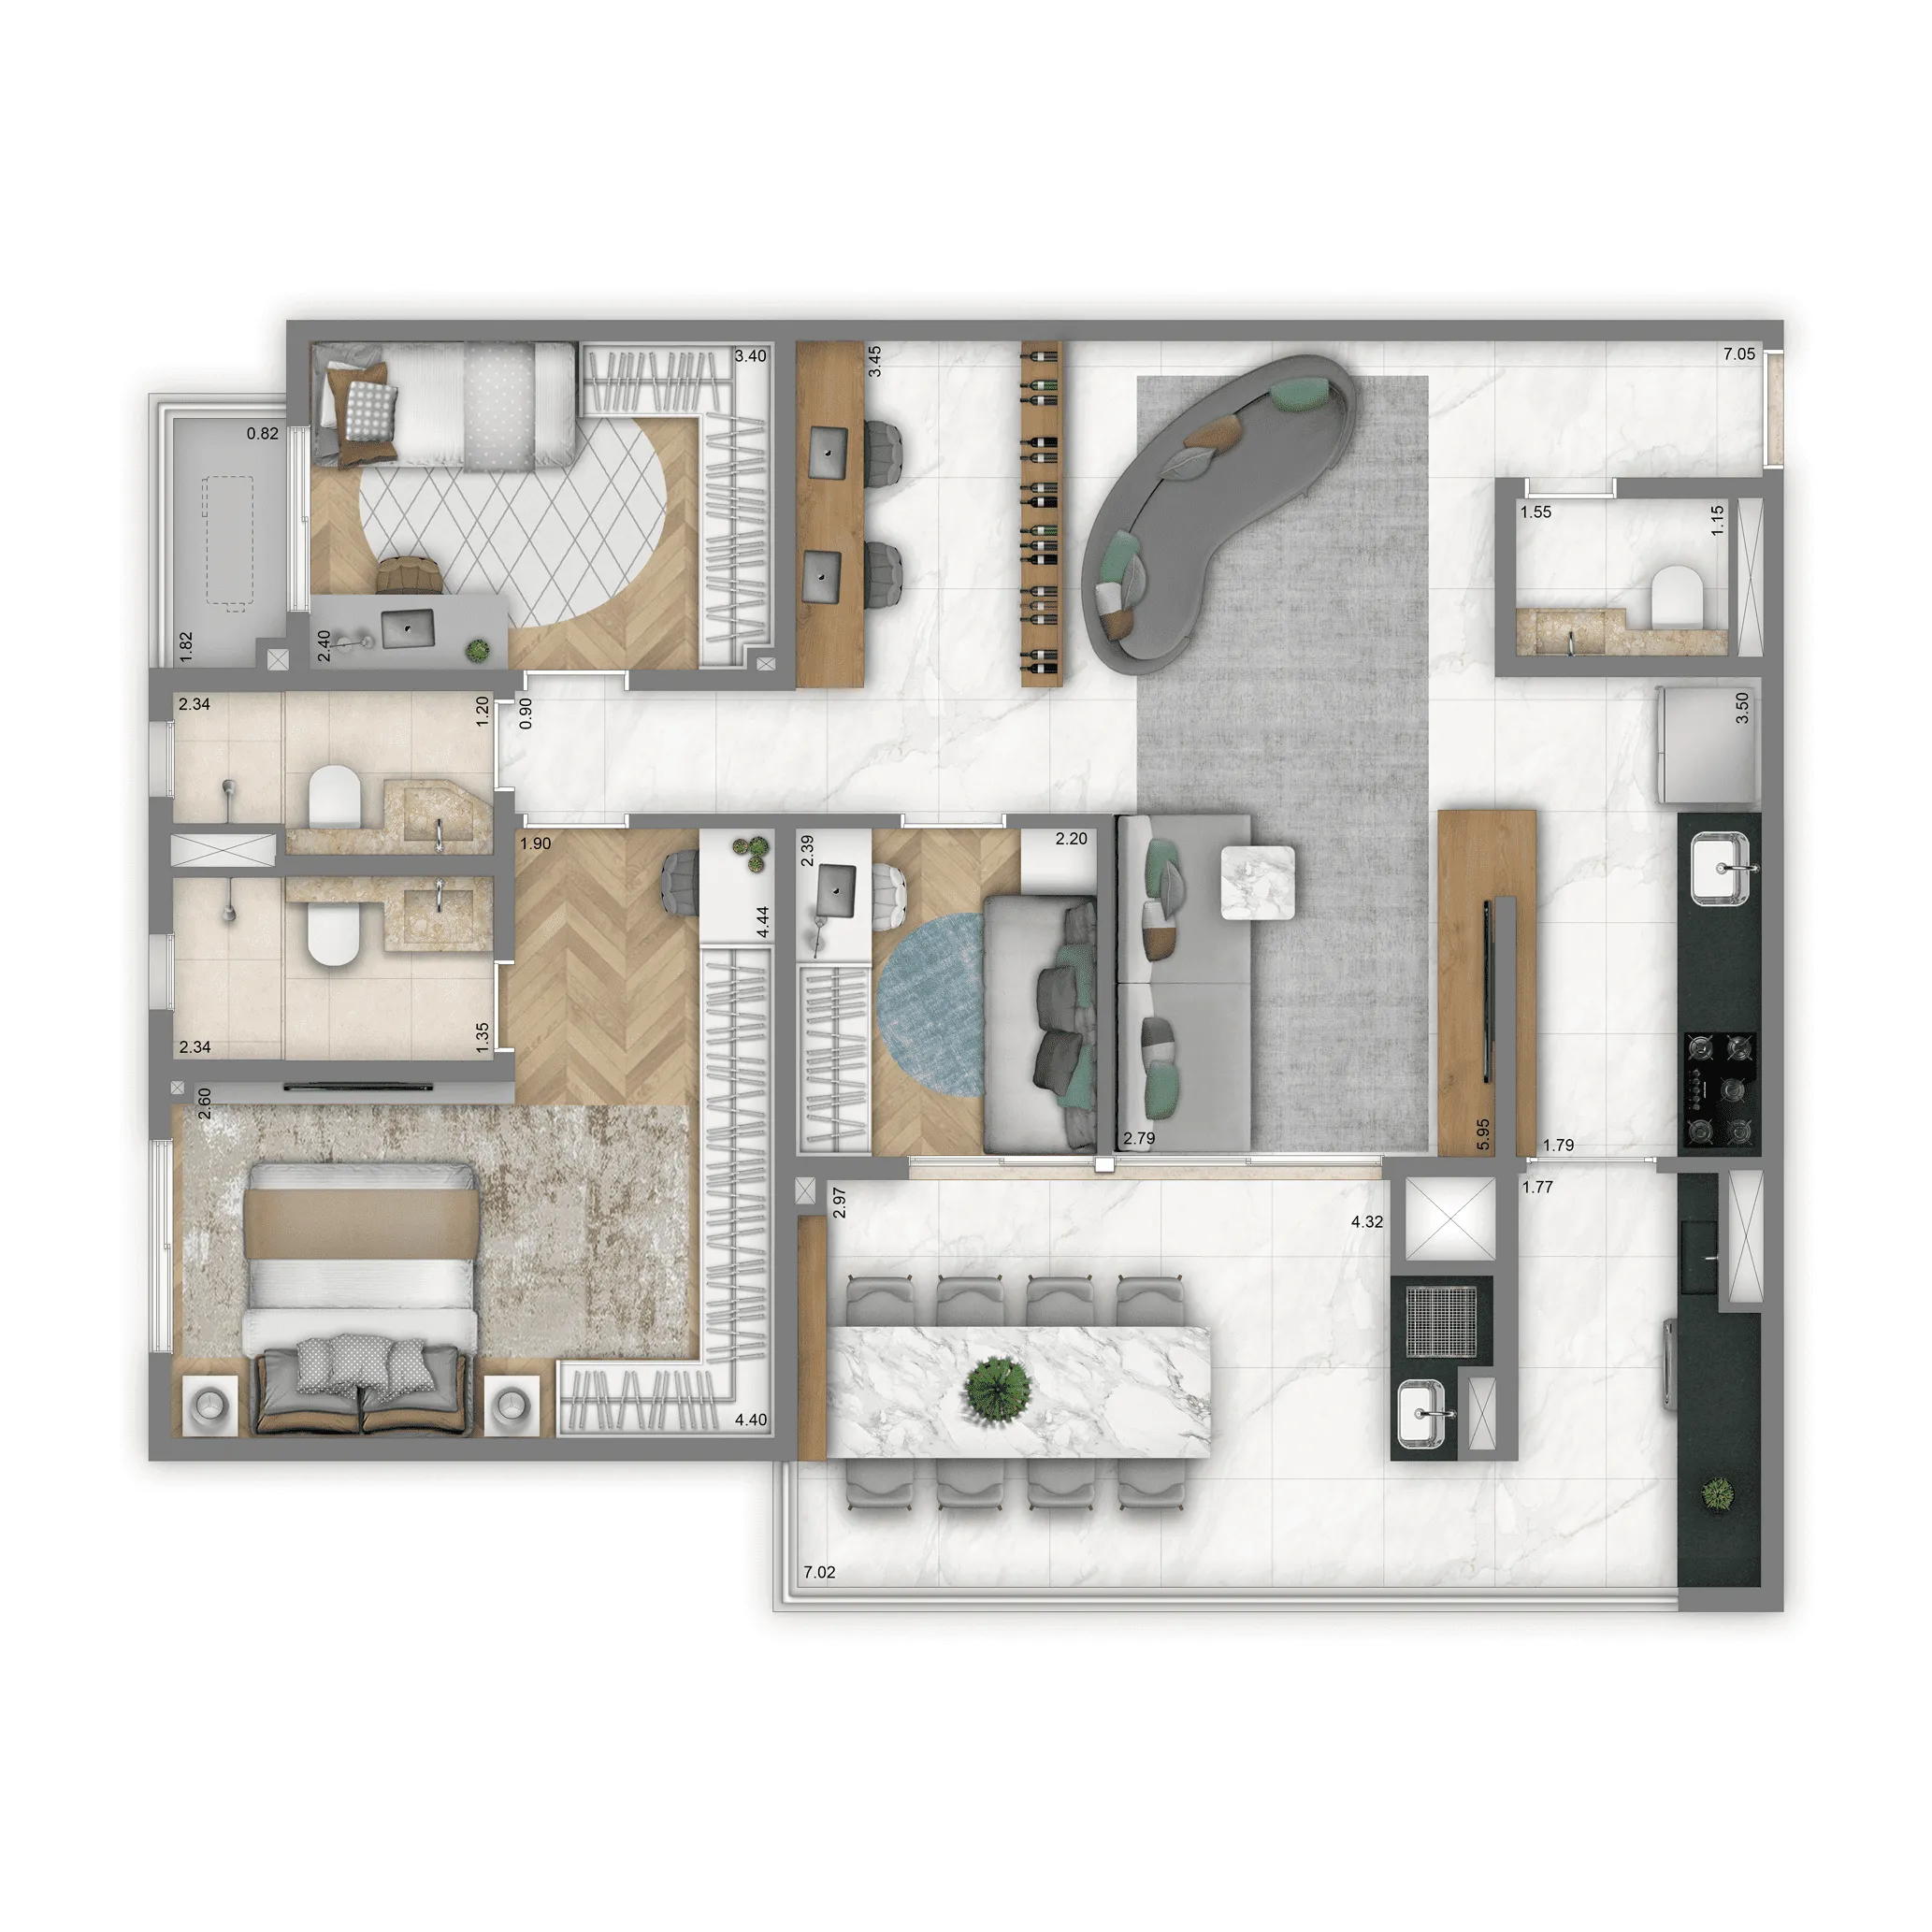 Planta-tipo 104 m² | 3 Dorms. (1 Suíte)